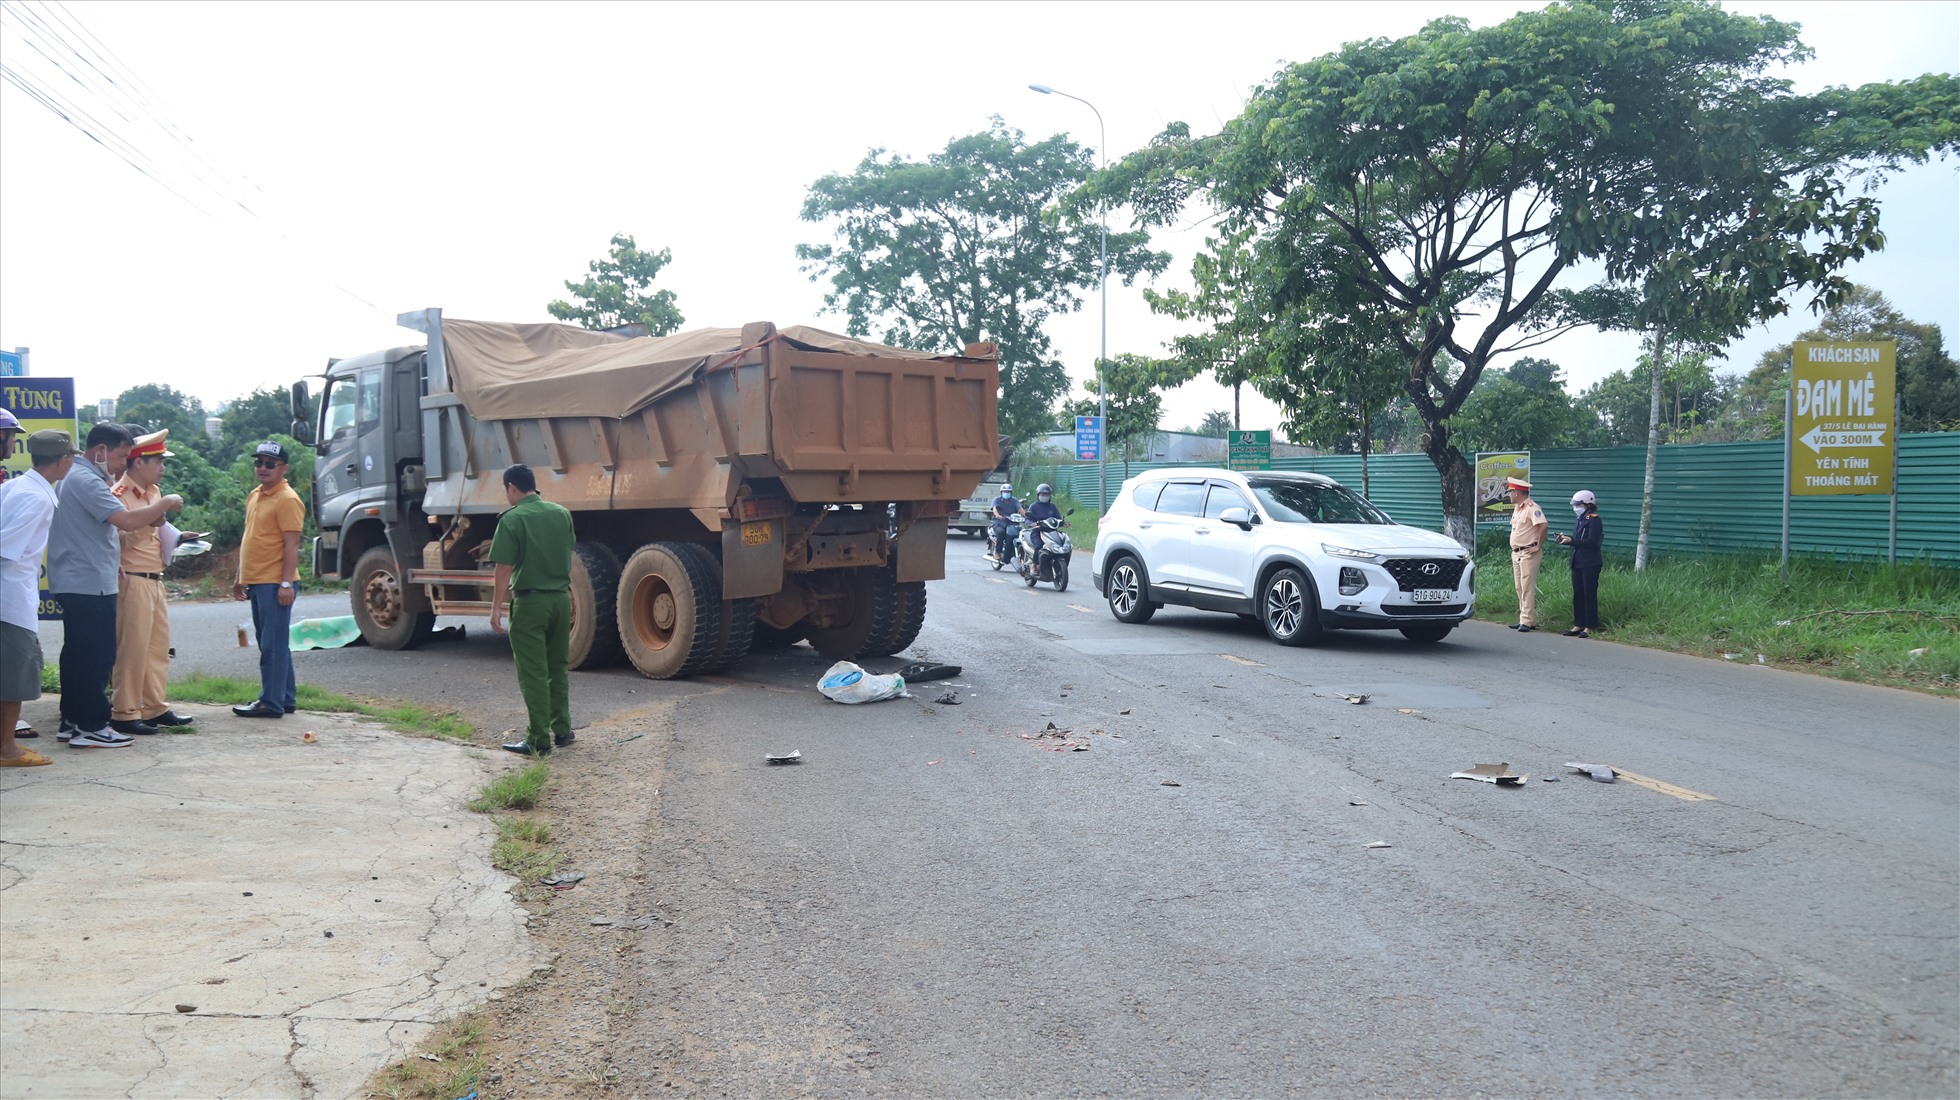 Hiện trường vụ việc tai nạn giao thông khiến người đàn ông tử vong tại chỗ ở thành phố Bảo Lộc (Lâm Đồng). Ảnh: Khánh Phúc